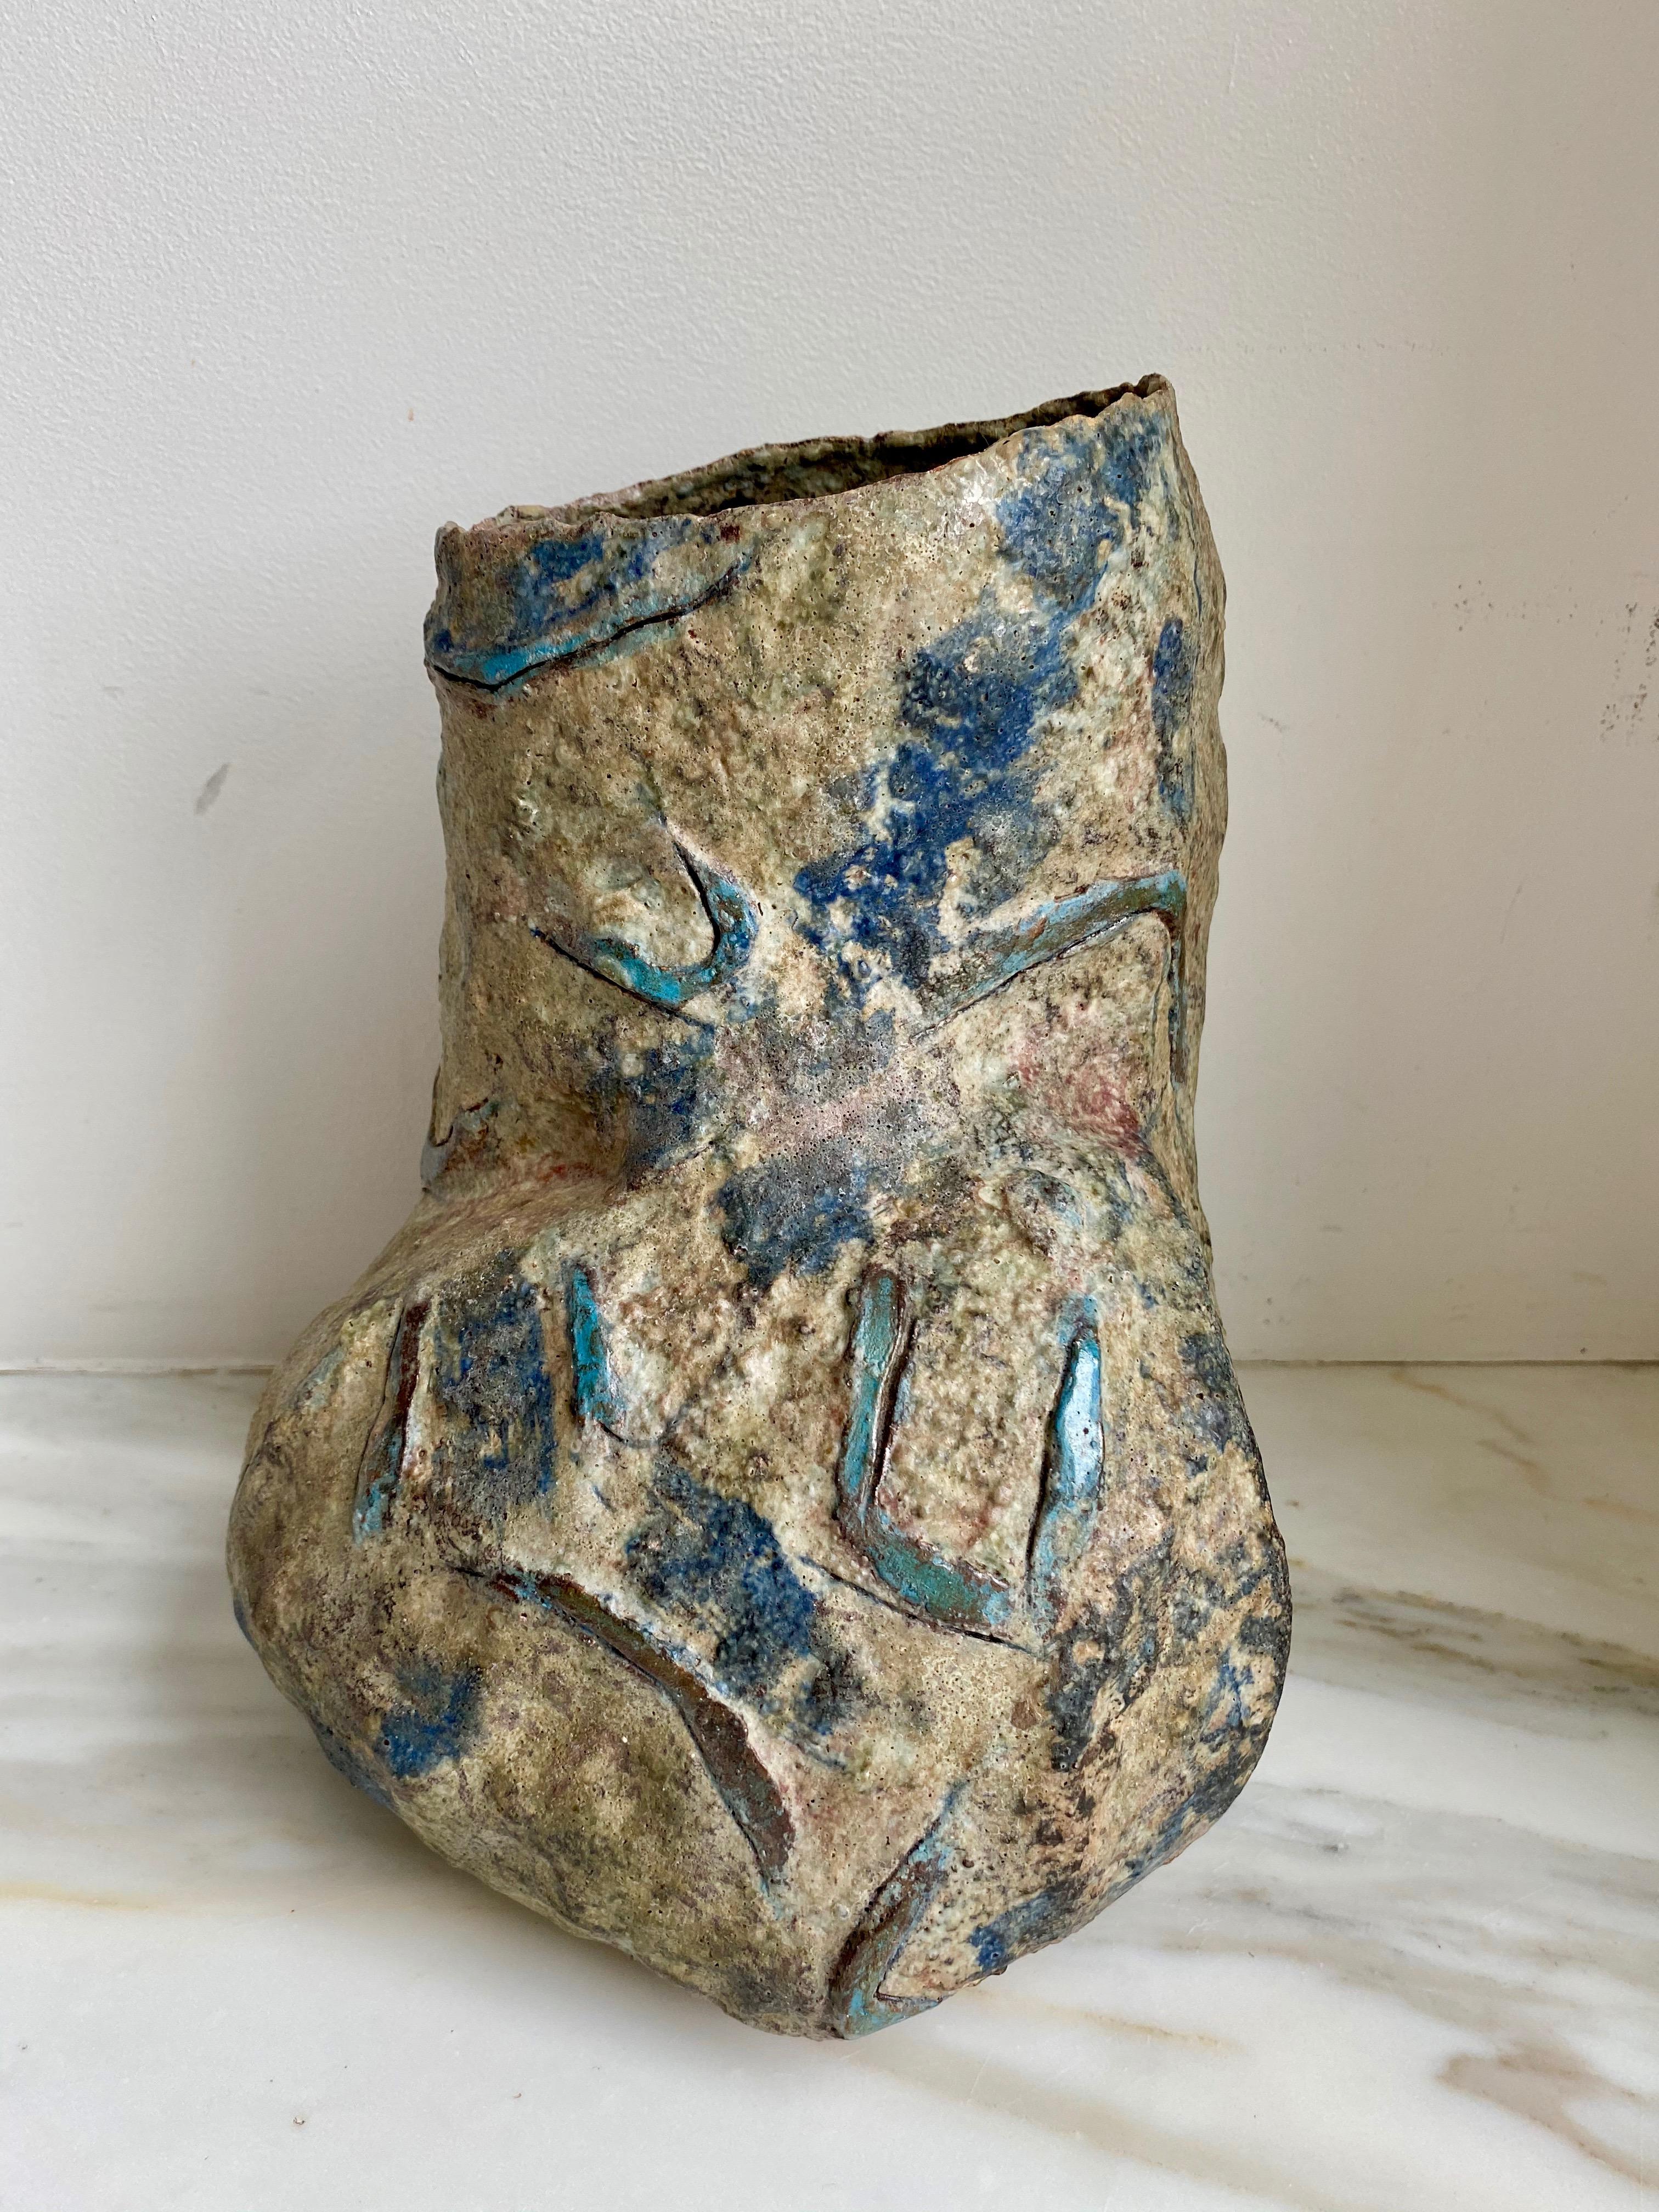 Vasija escultórica asimétrica de gres con superficie rugosa y desigual y símbolos geométricos azules incisos 

Construido a mano por Sara Radstone

Gran Bretaña, década de 1990.